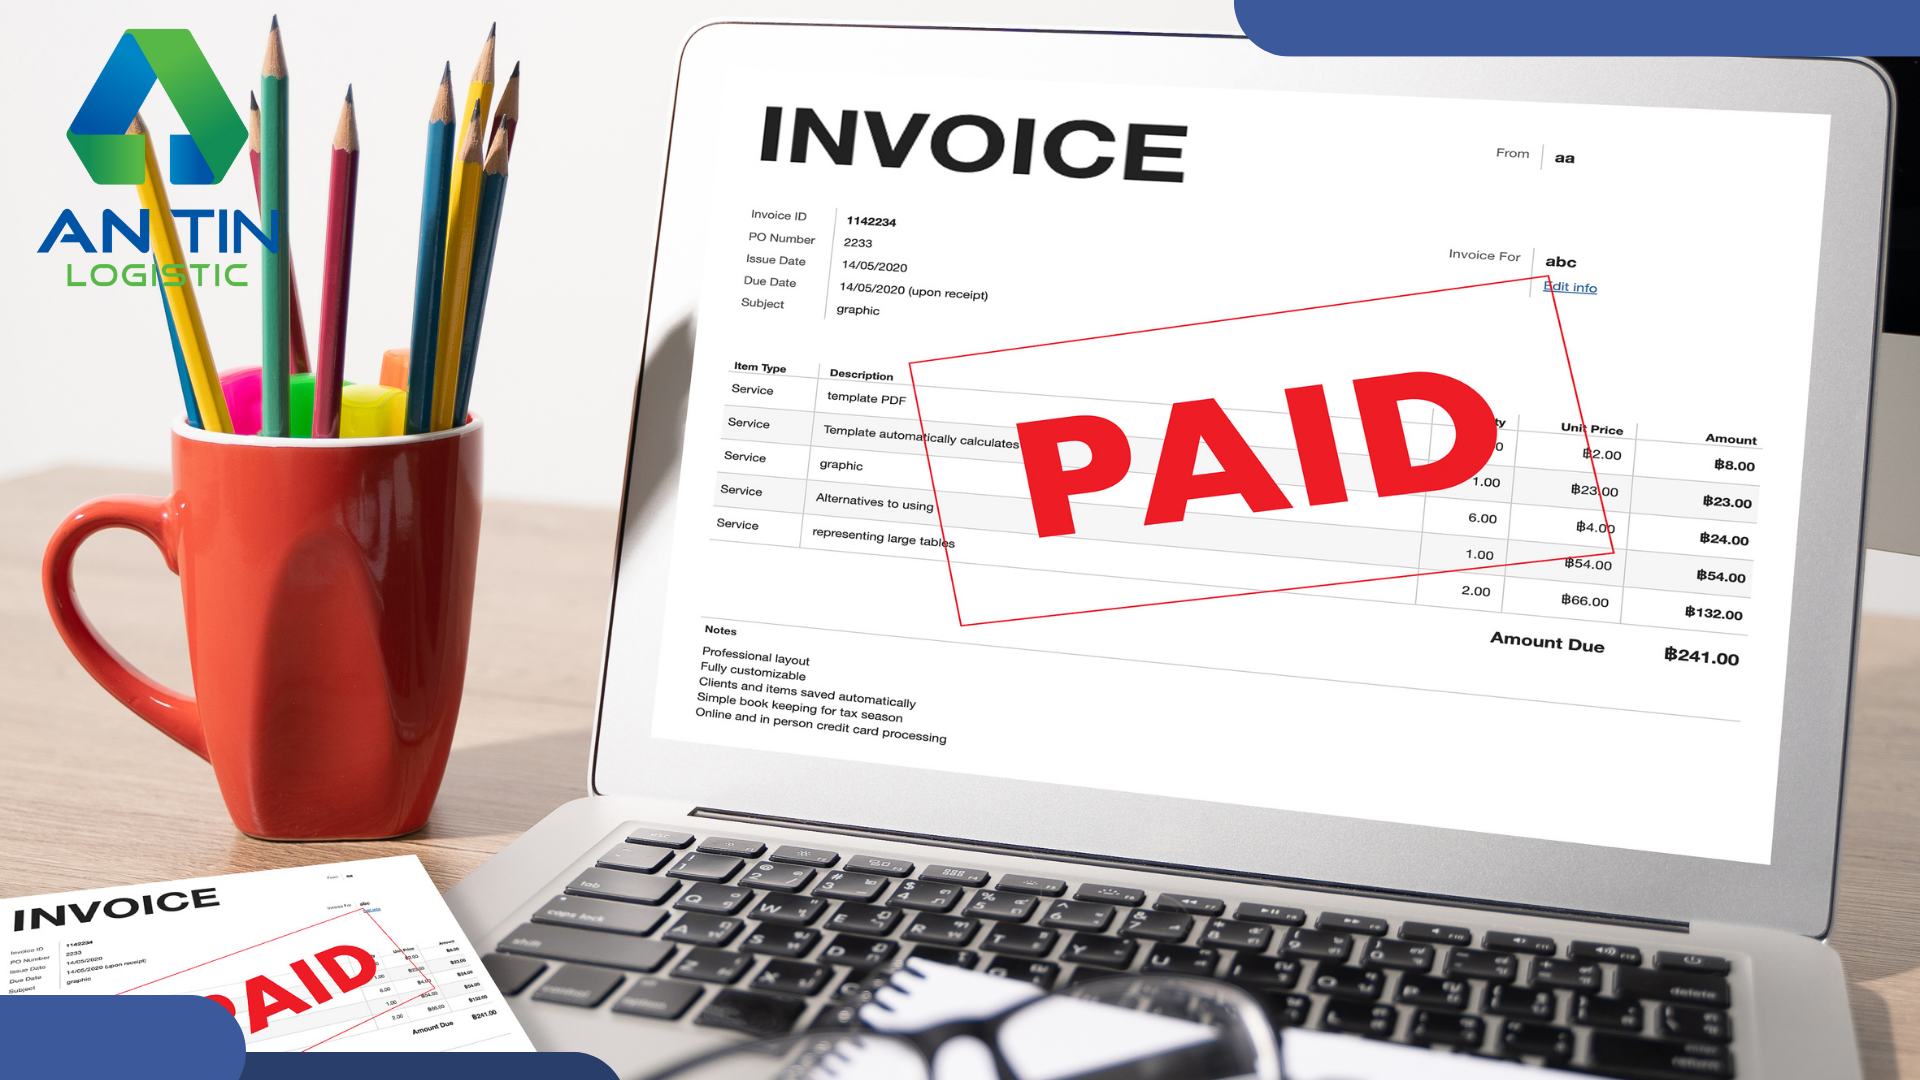 Proforma Invoice có thay thế hợp đồng được không?